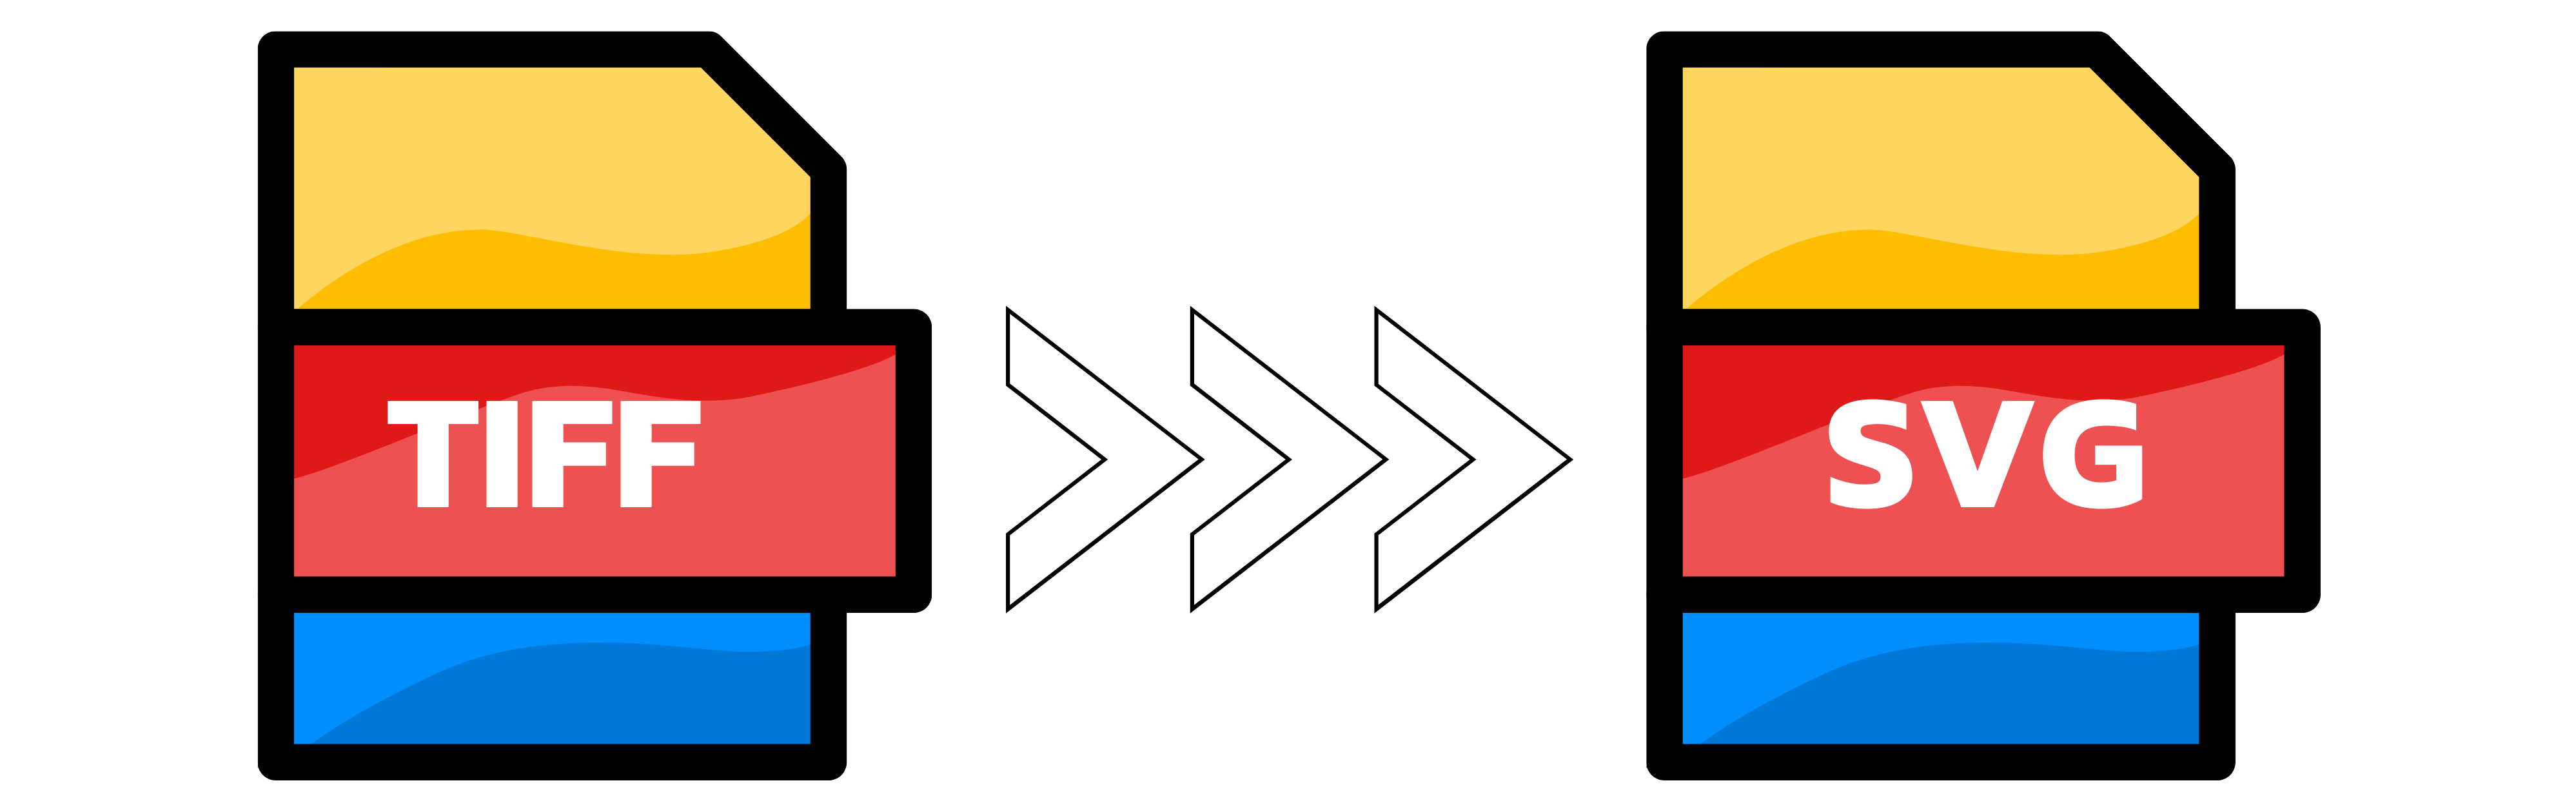 Illustrazione: Conversione di TIFF in SVG